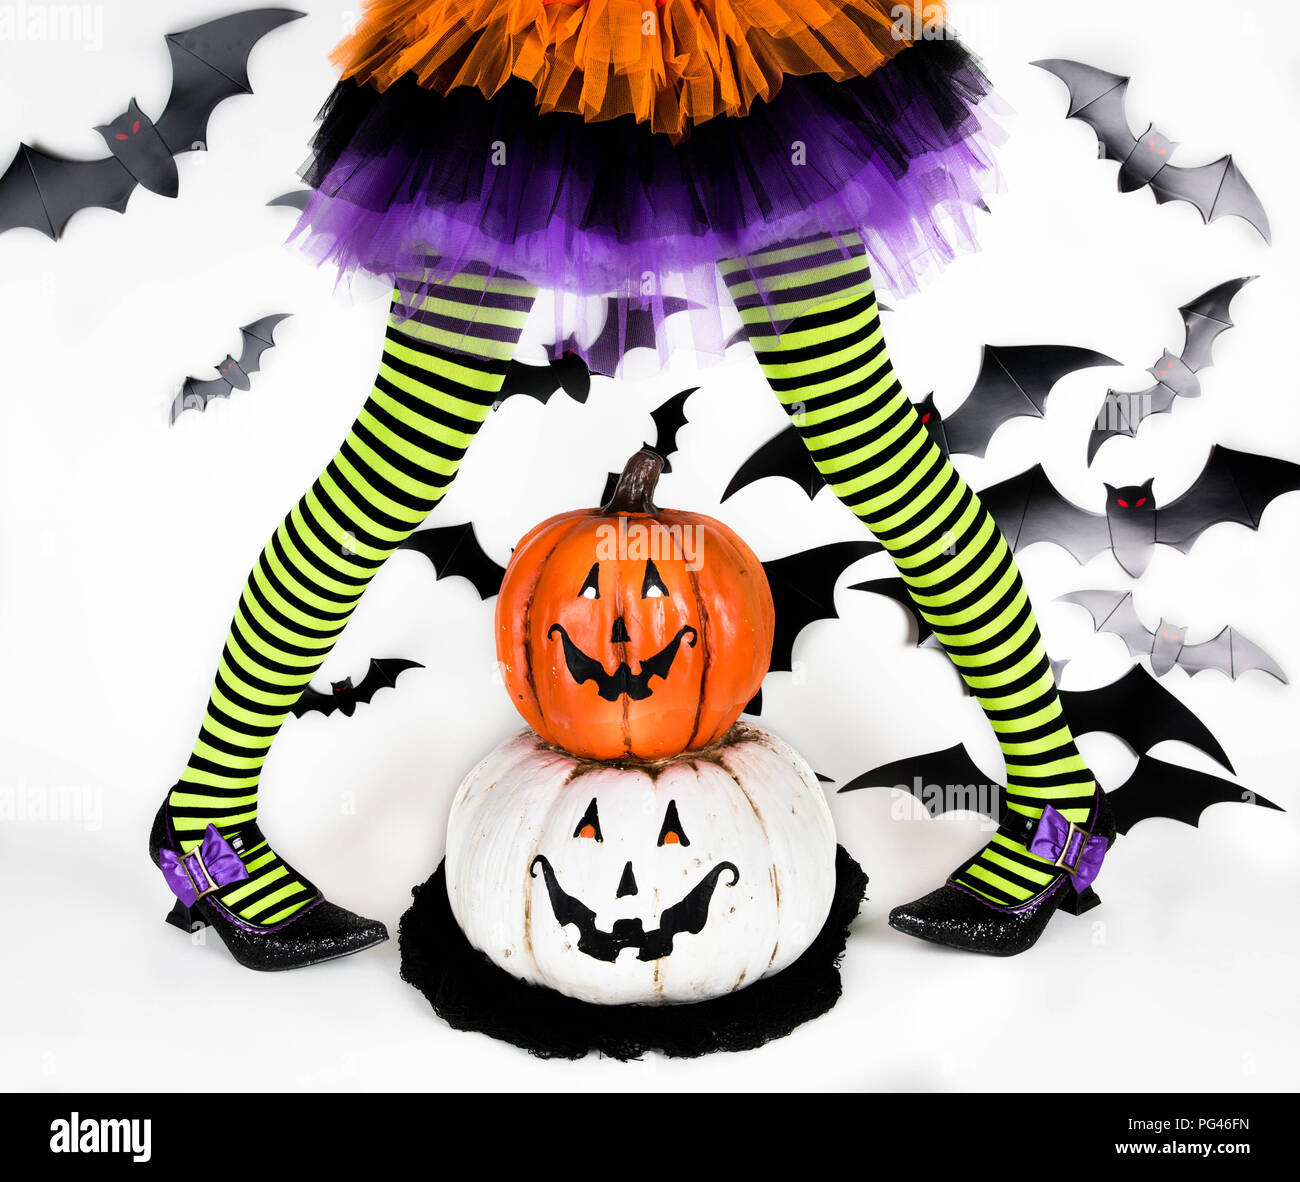 Funny verde rigato nero gambe di una bambina con il costume di halloween di una strega con scarpe strega e smiley zucca di halloween jack o lantern Foto Stock